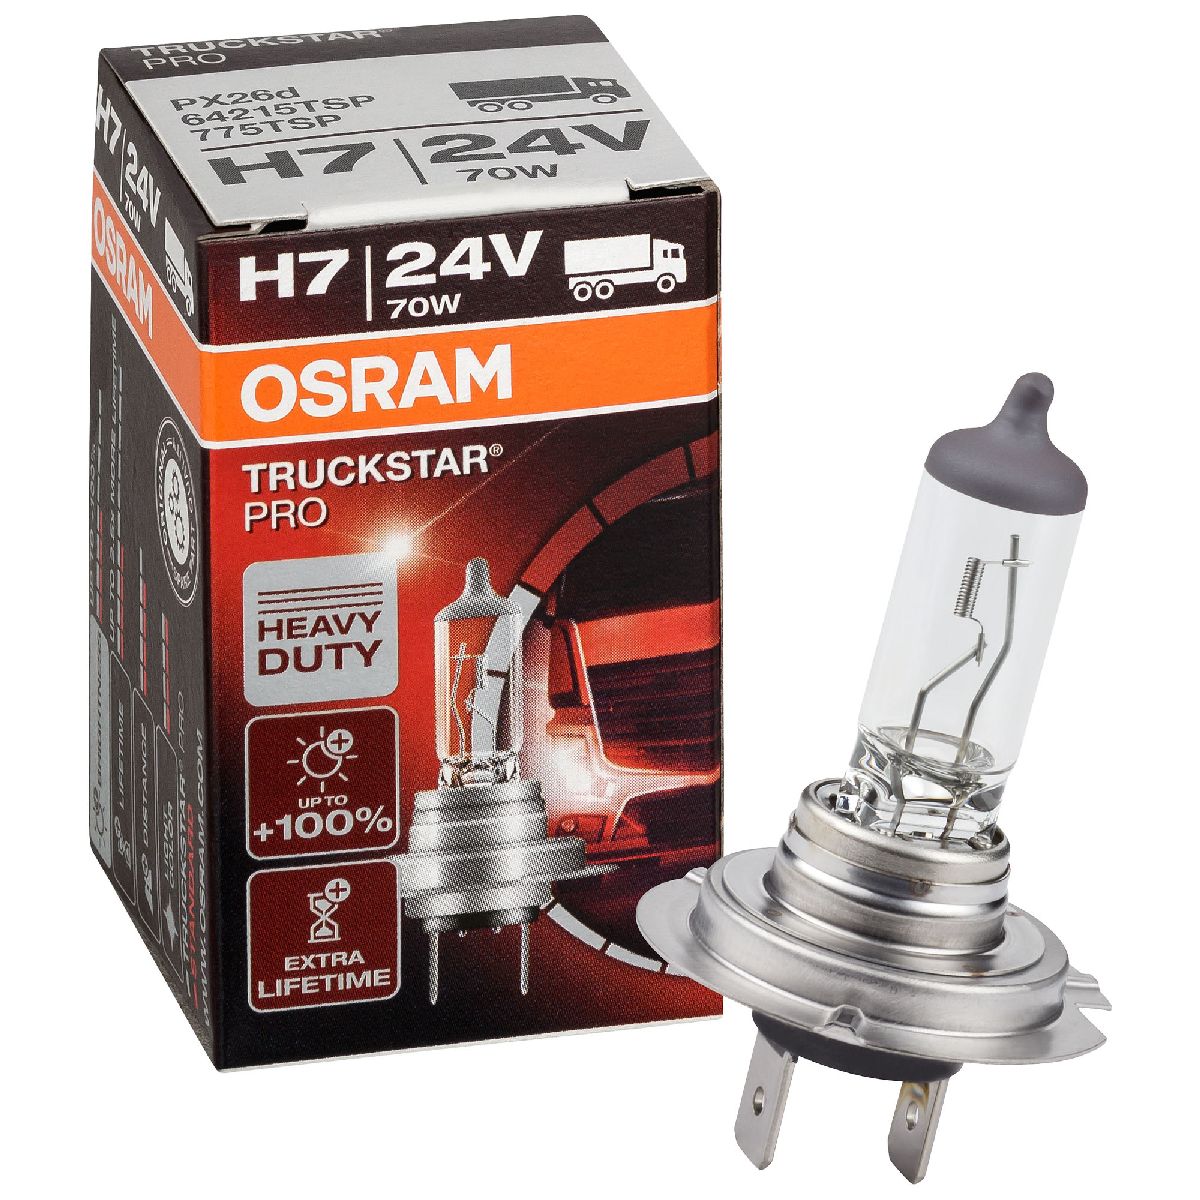 Auto-Lampen-Discount - H7 Lampen und mehr günstig kaufen - 10x OSRAM  Glühlampe H7 Truckstar Pro 24V 70W Heavy Duty LKW 64215TSP